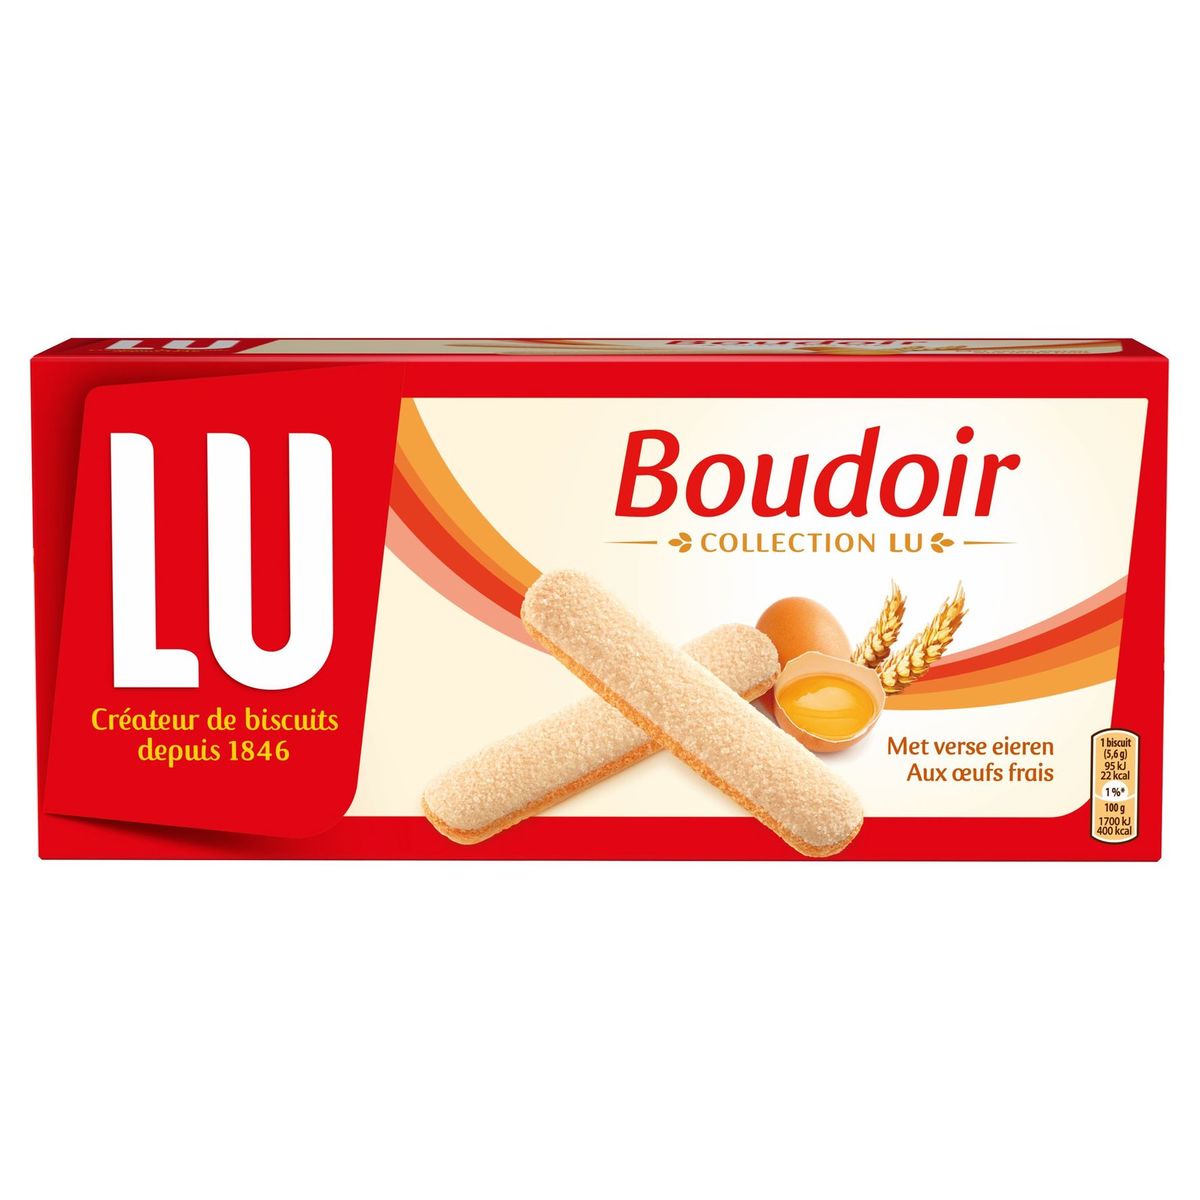 Lu Boudoir The Original Aux Œufs Frais 165 G Carrefour Site 